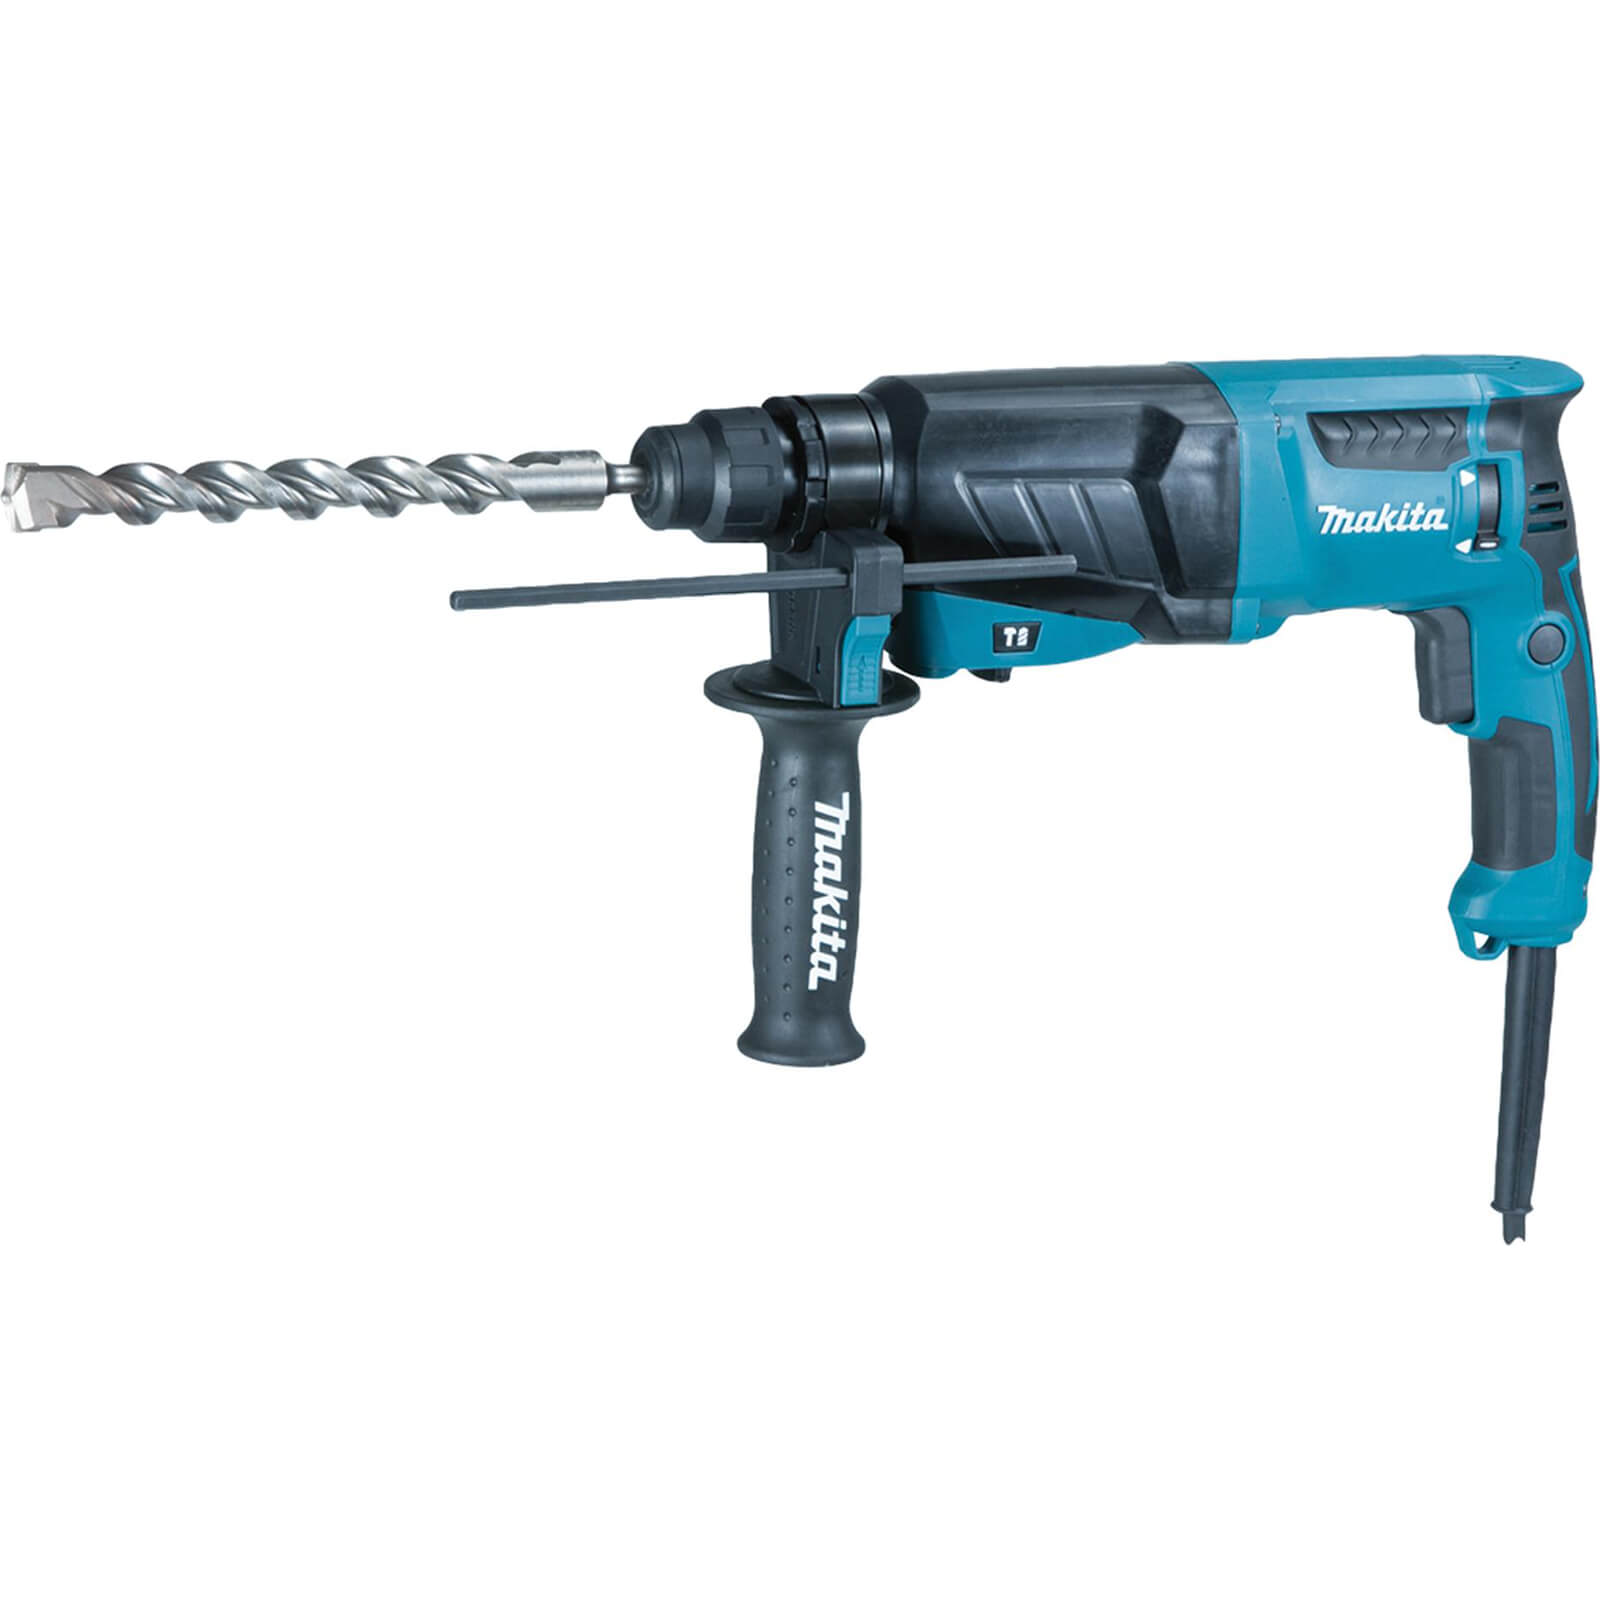 Image of Makita HR2630 SDS Plus Hammer Drill 110v